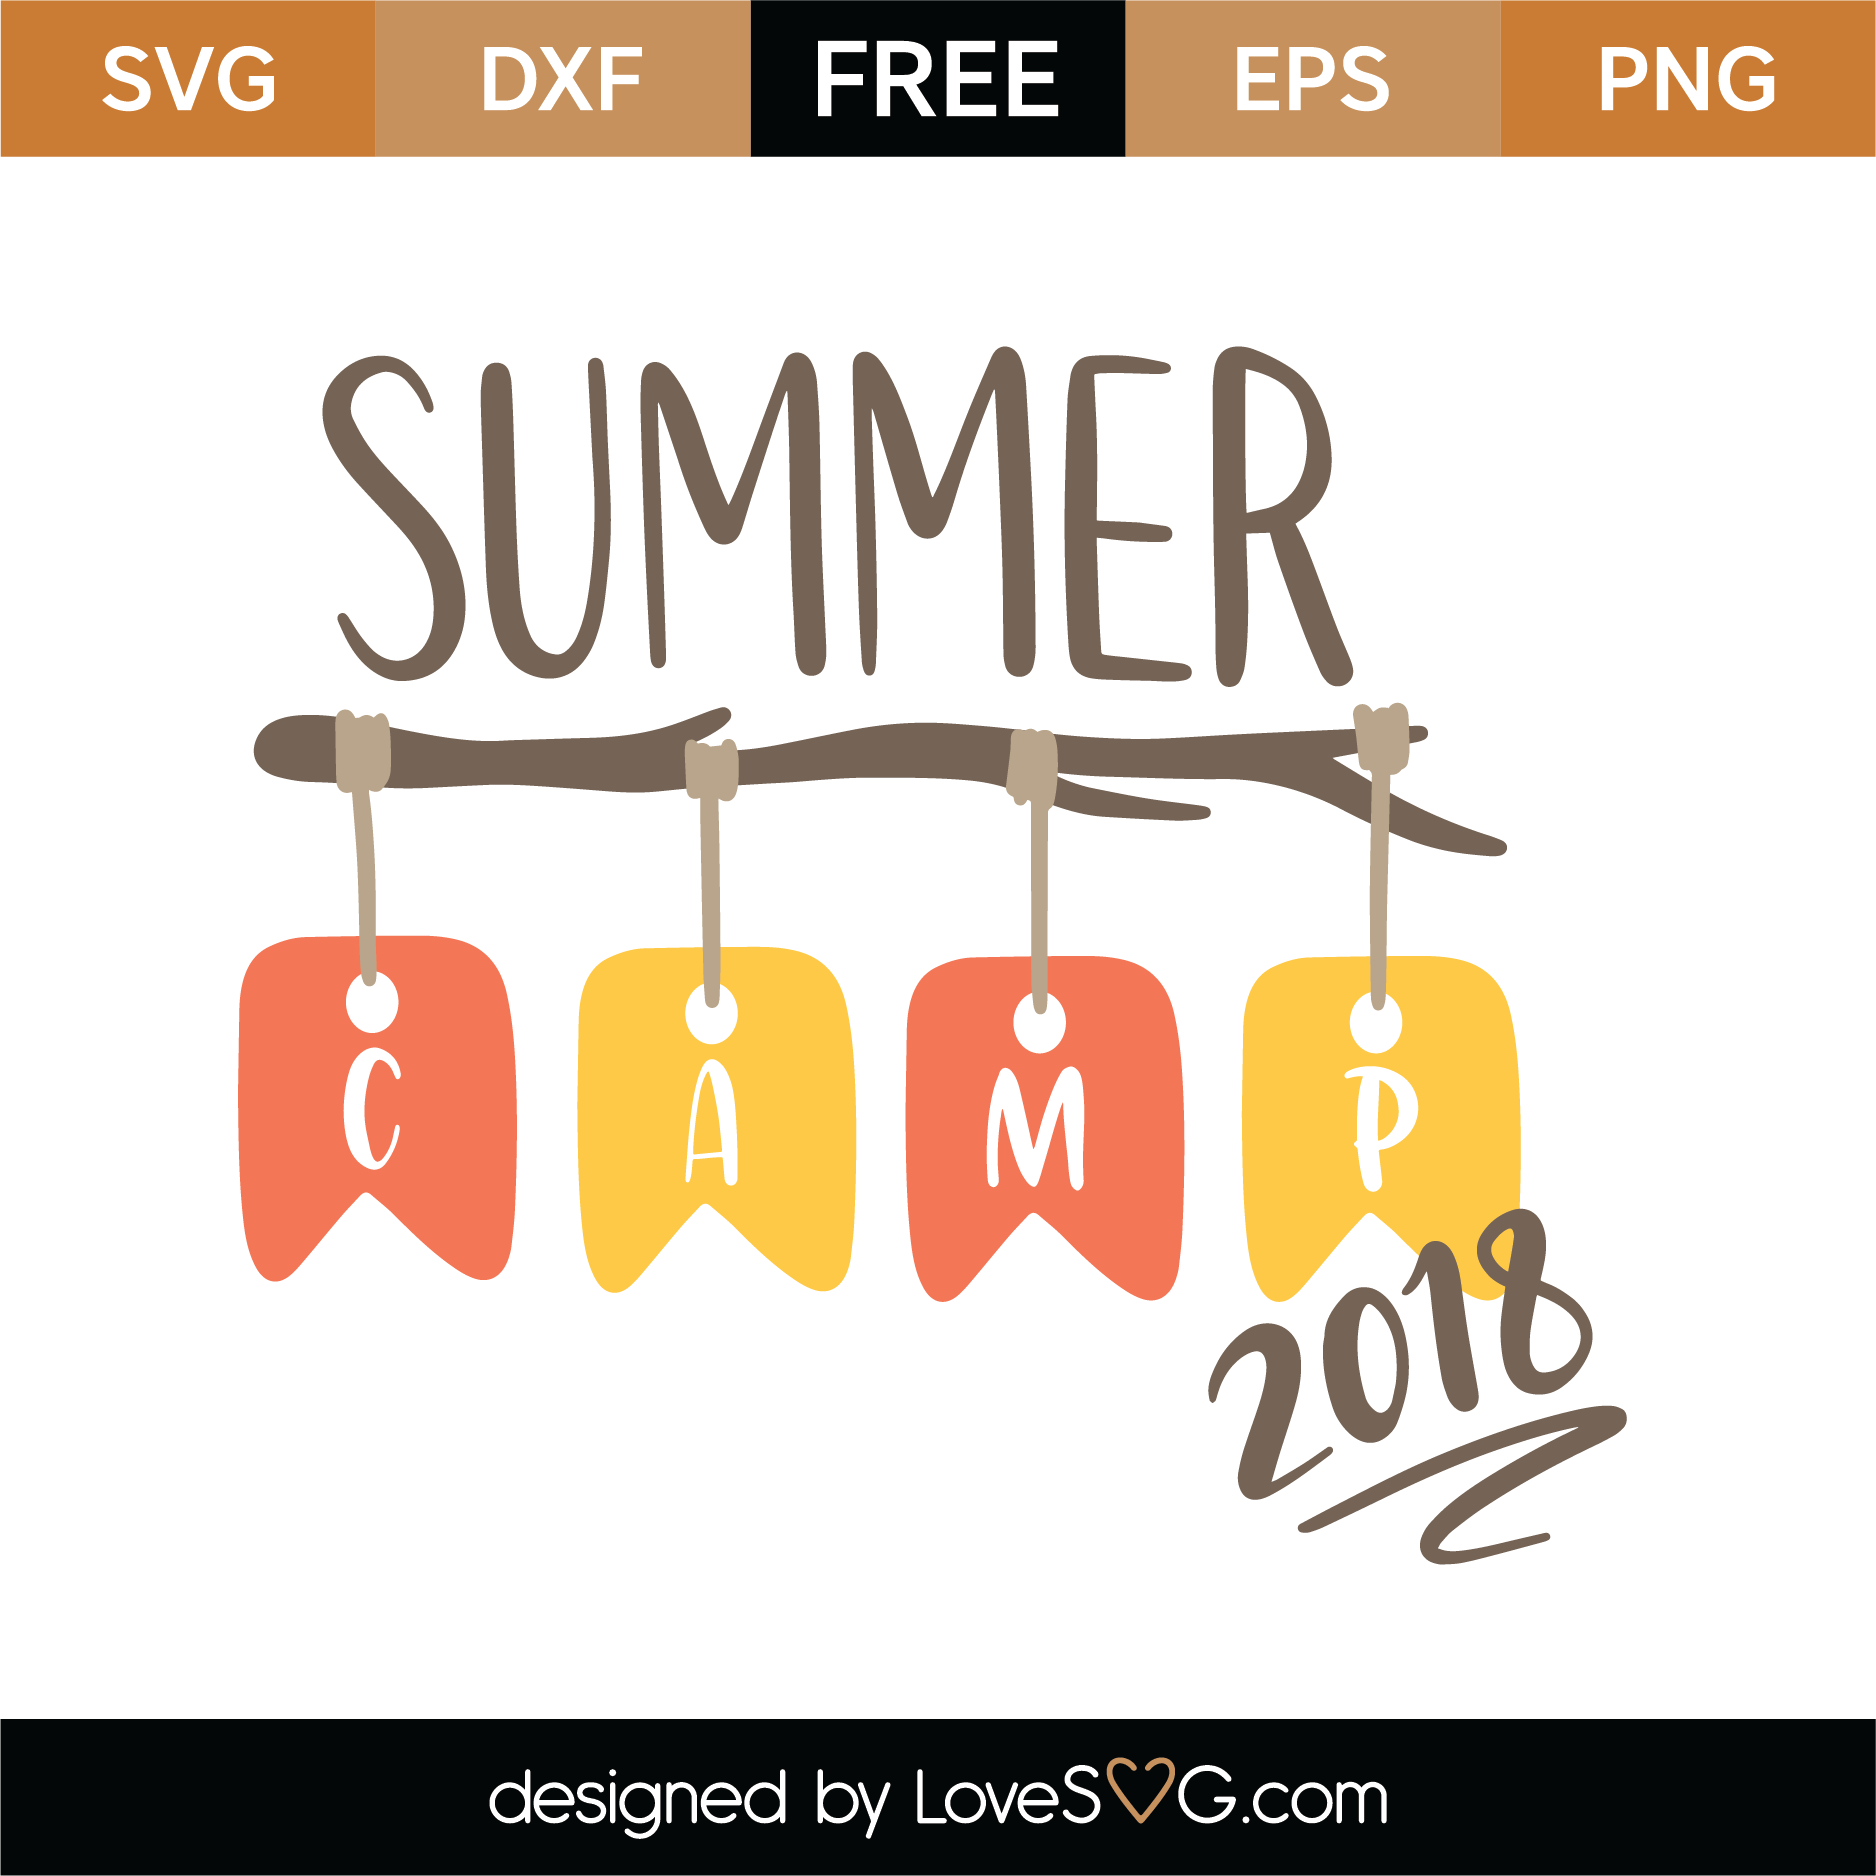 Download Free Summer Camp SVG Cut File | Lovesvg.com